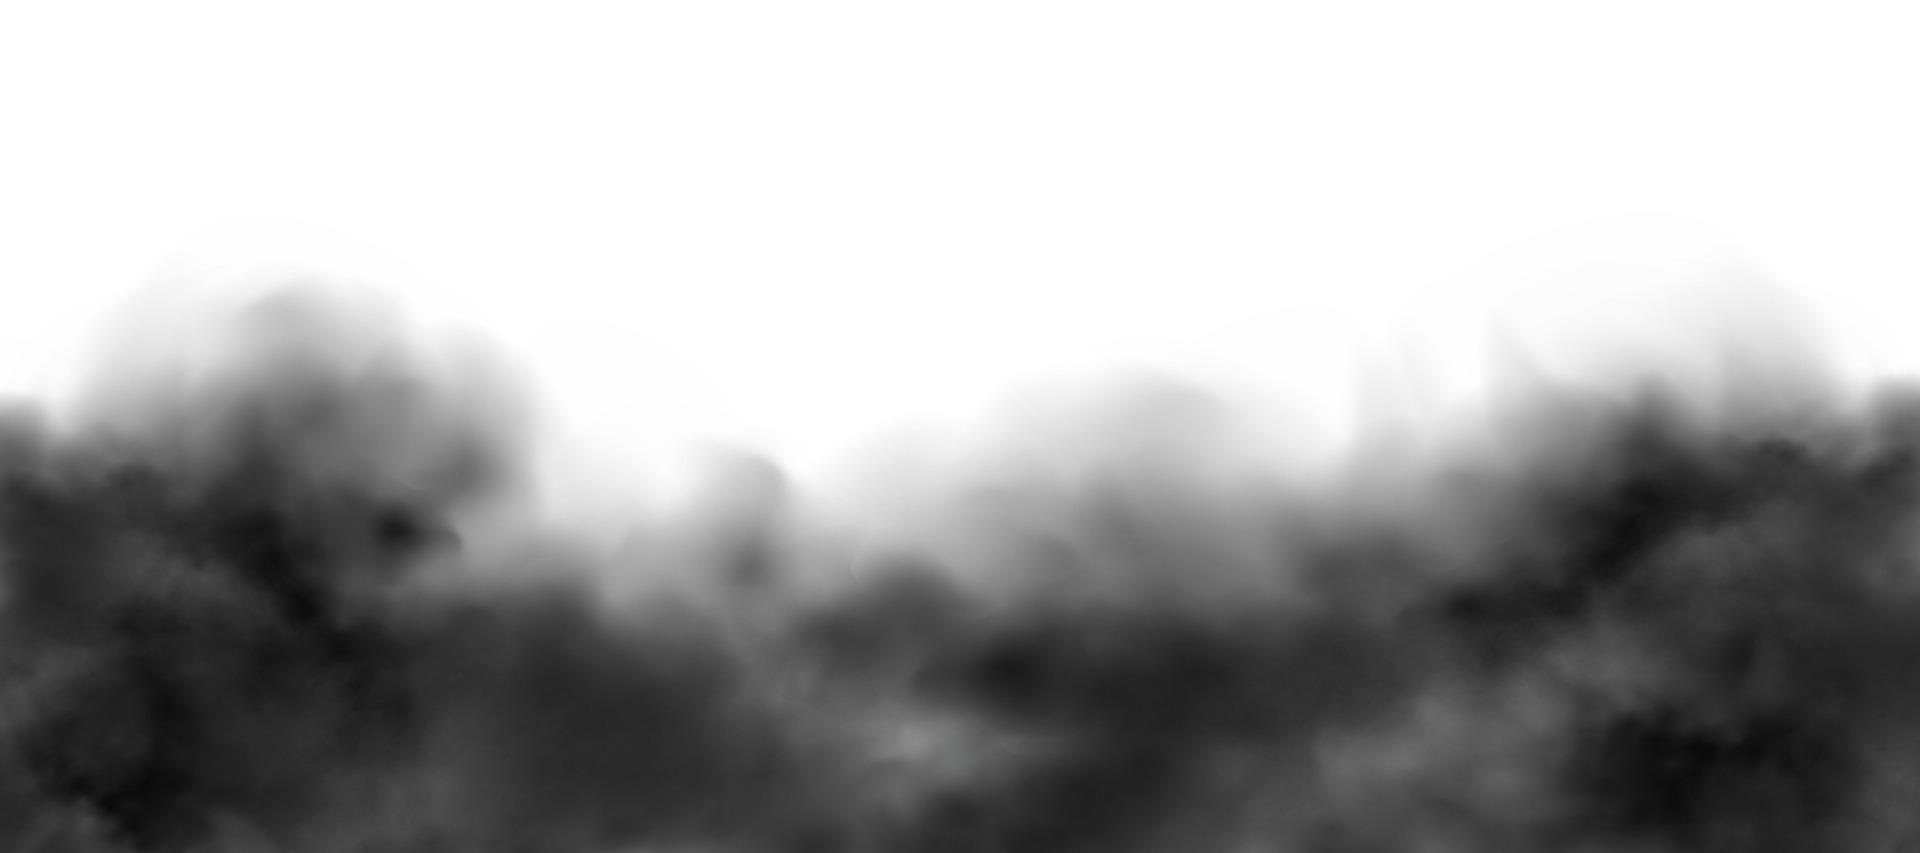 nuvola di polvere con sporco, fumo di sigaretta, smog, terra e particelle di sabbia. vettore realistico isolato su sfondo trasparente.